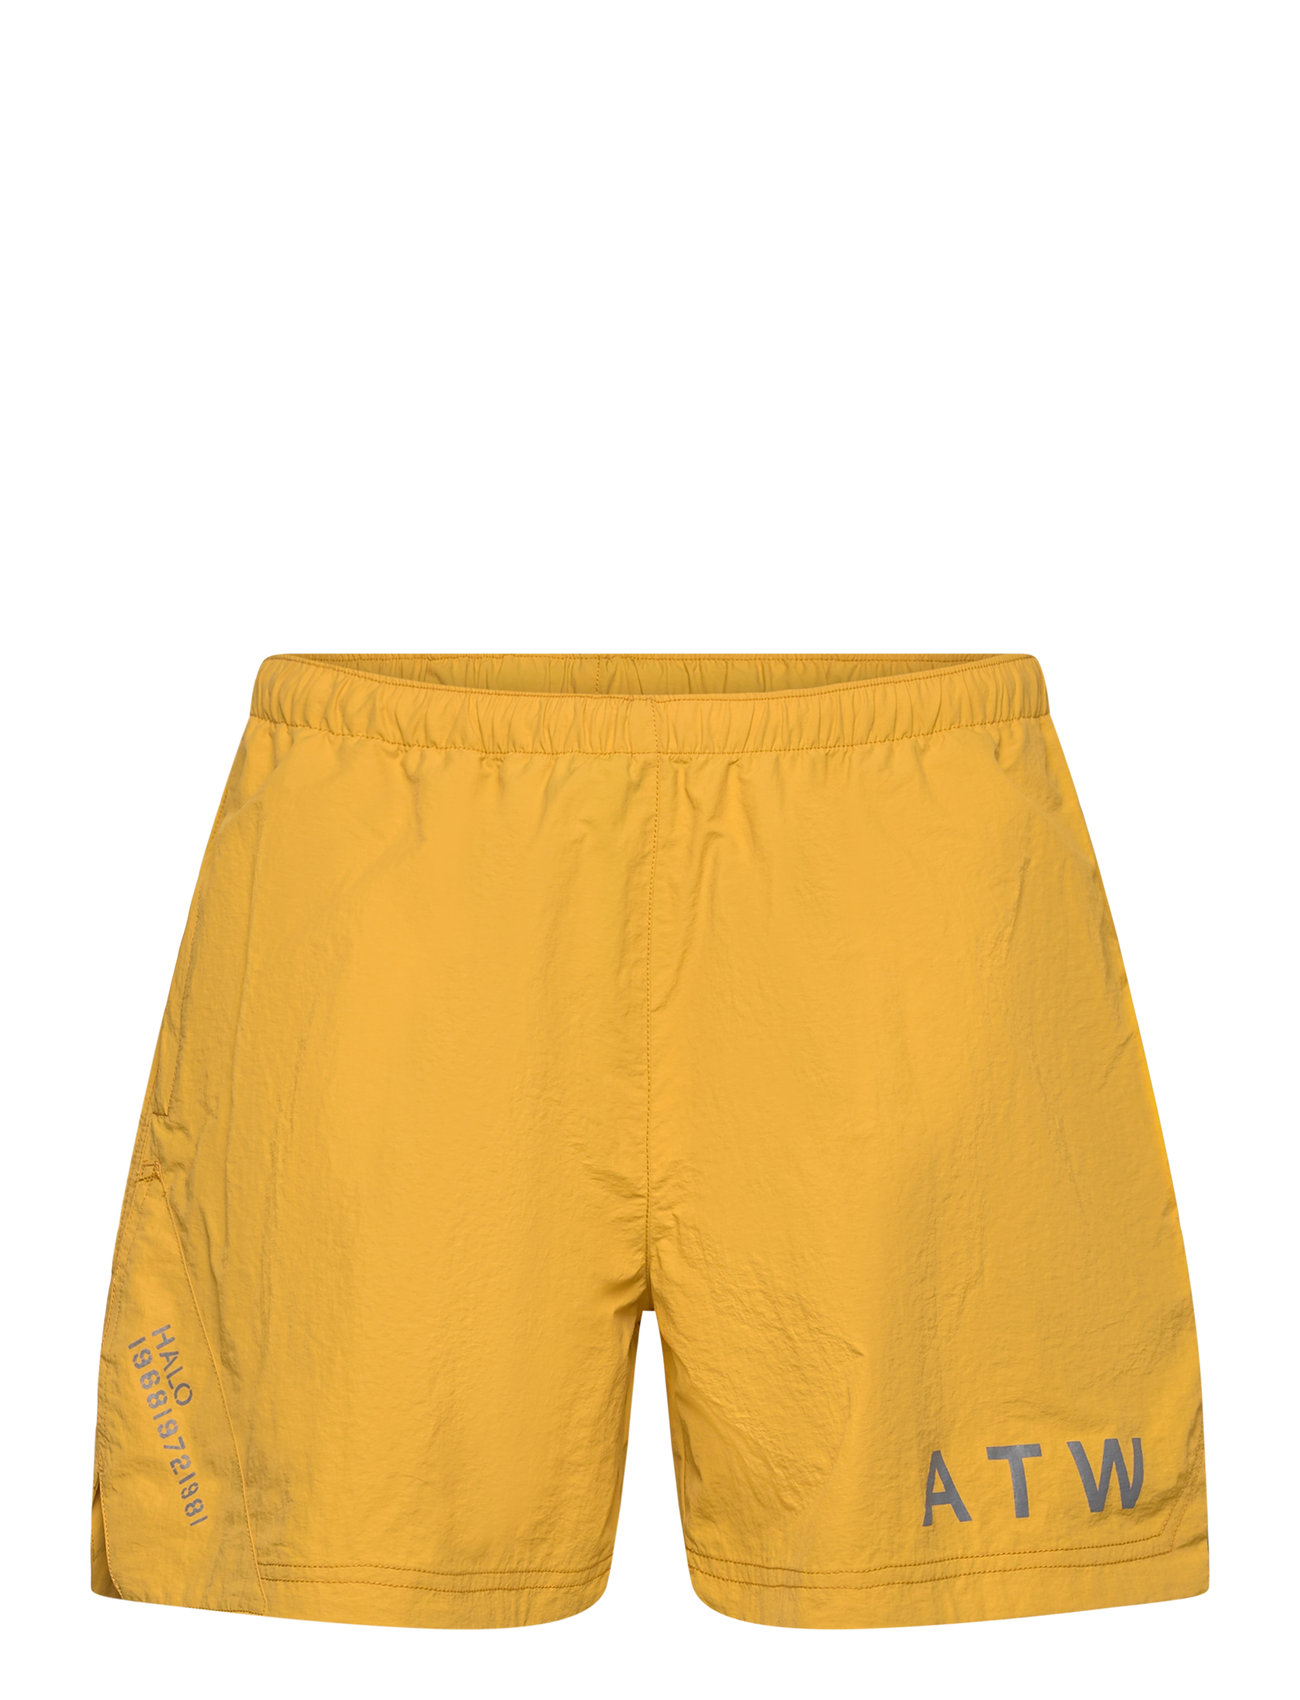 Halo Atw Nylon Shorts Badeshorts Yellow HALO